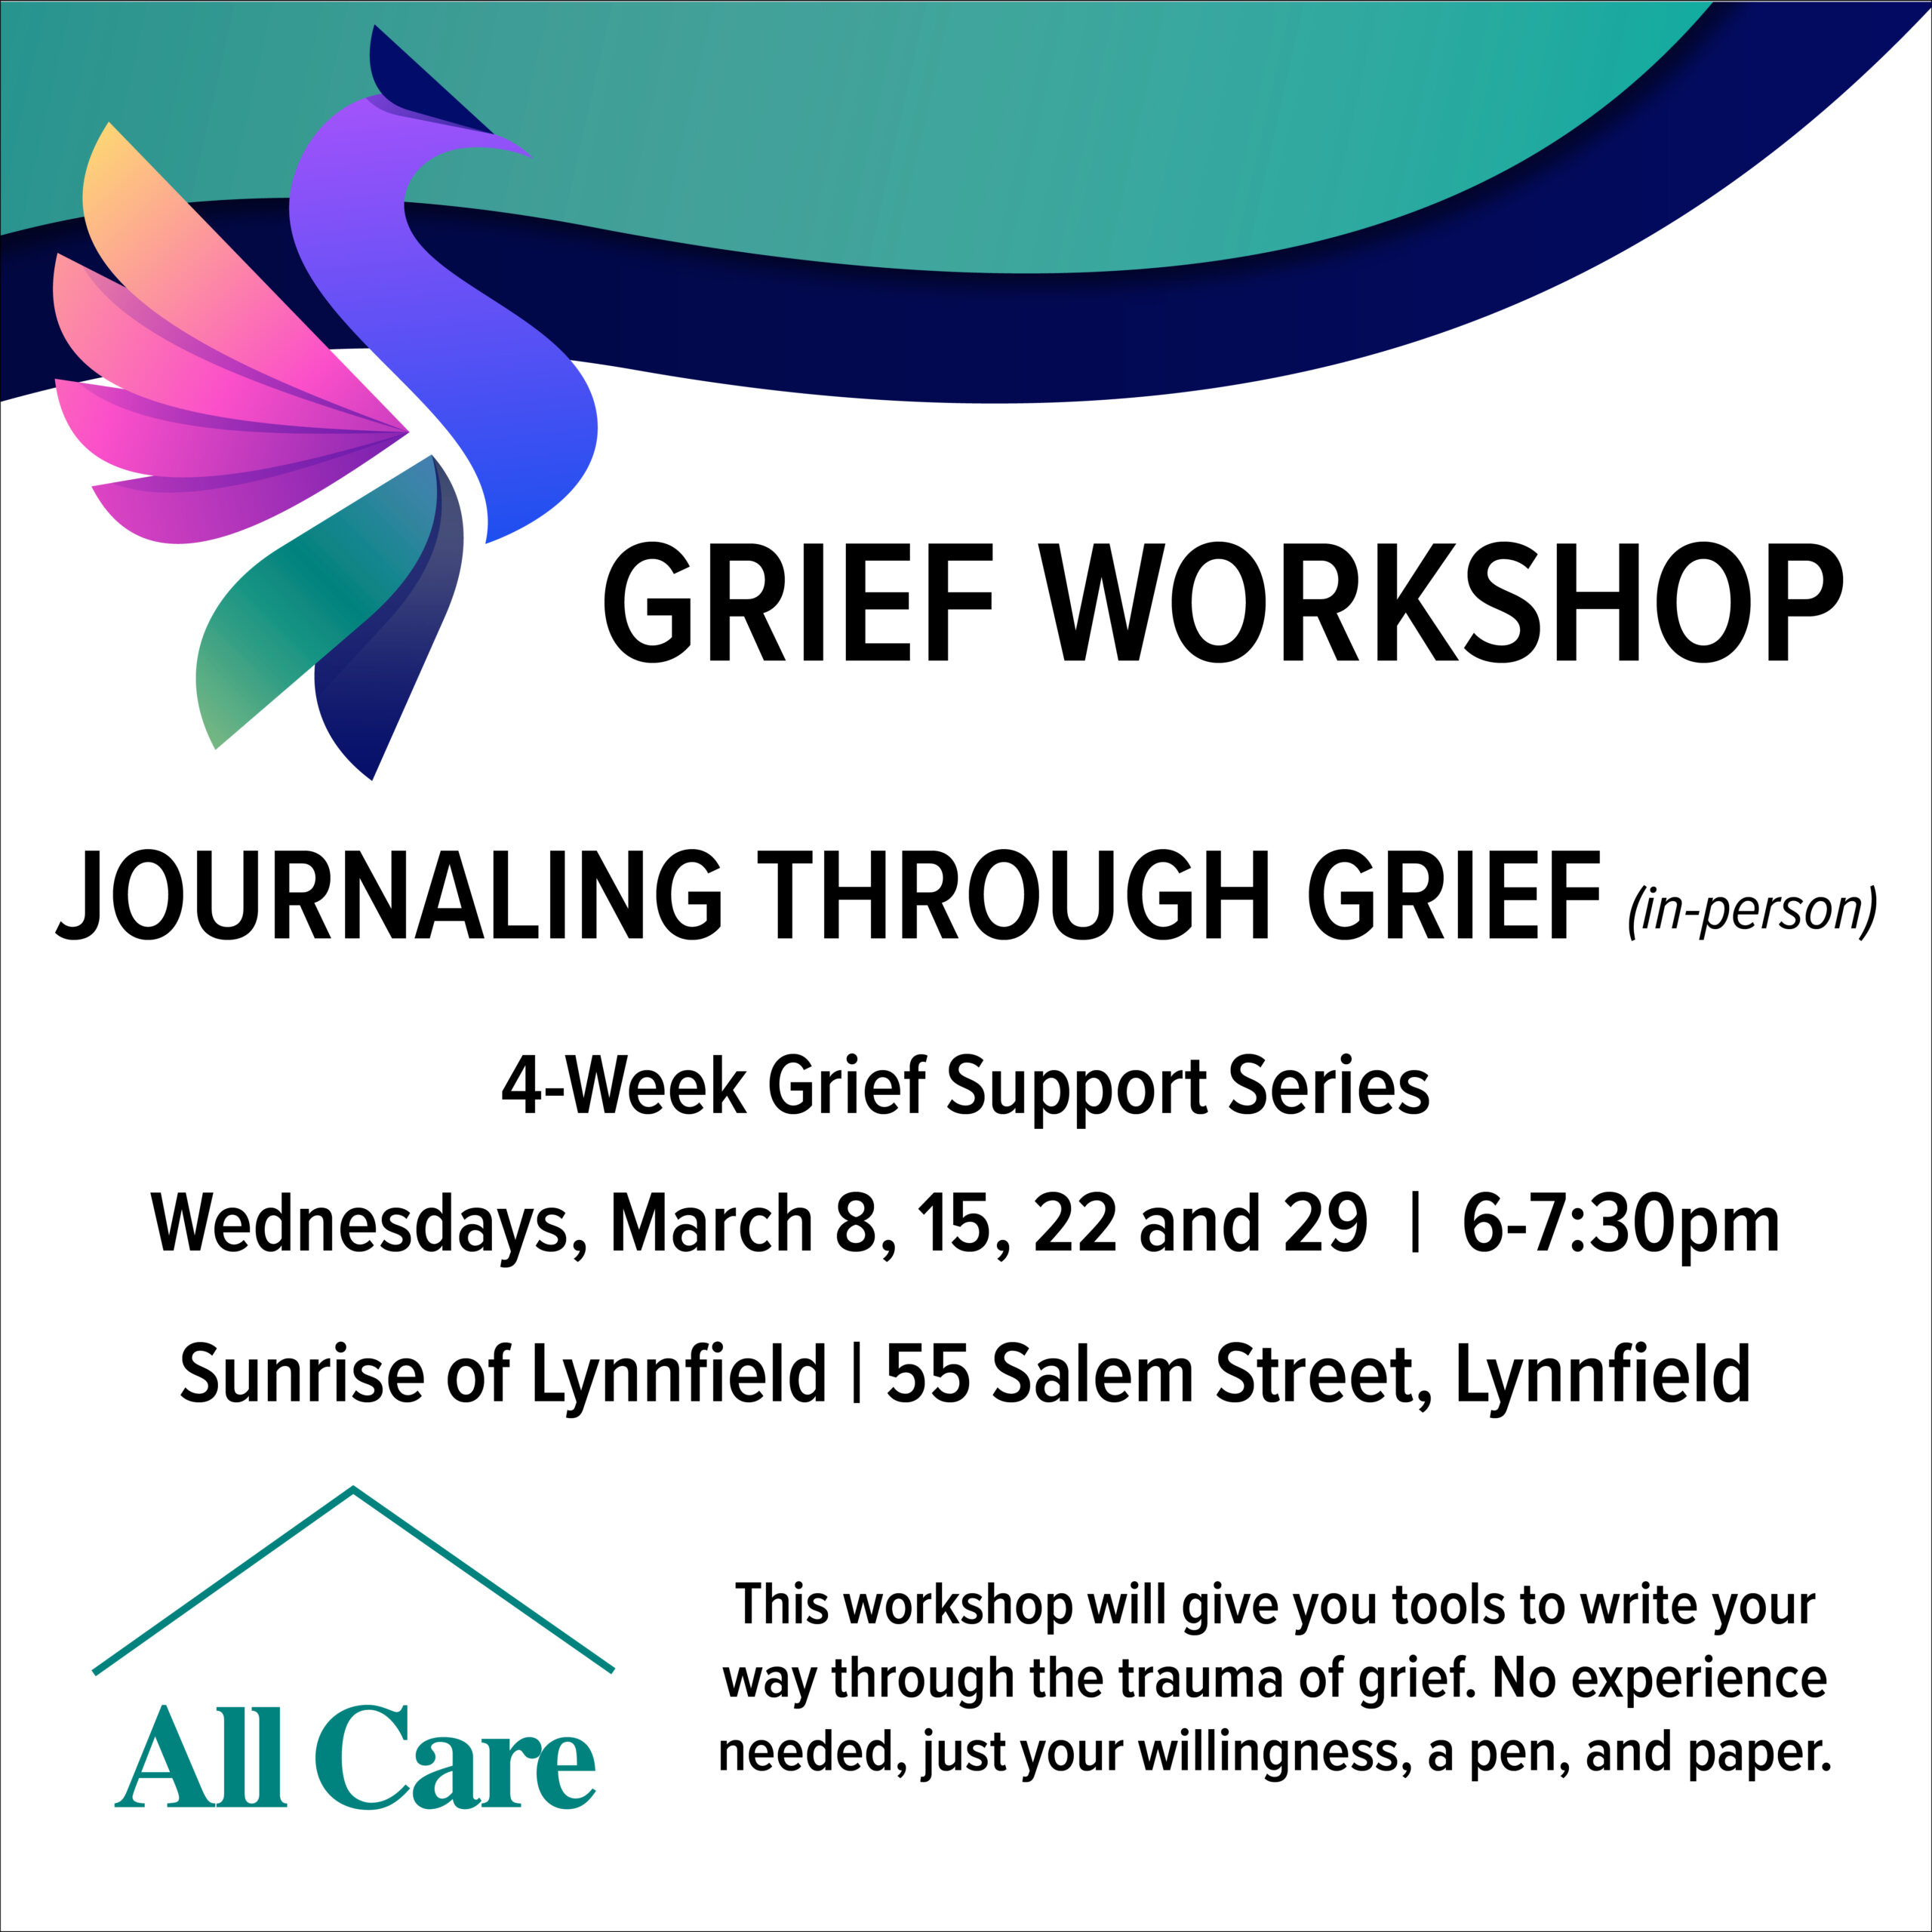 Grief Workshop, Journaling Through Grief